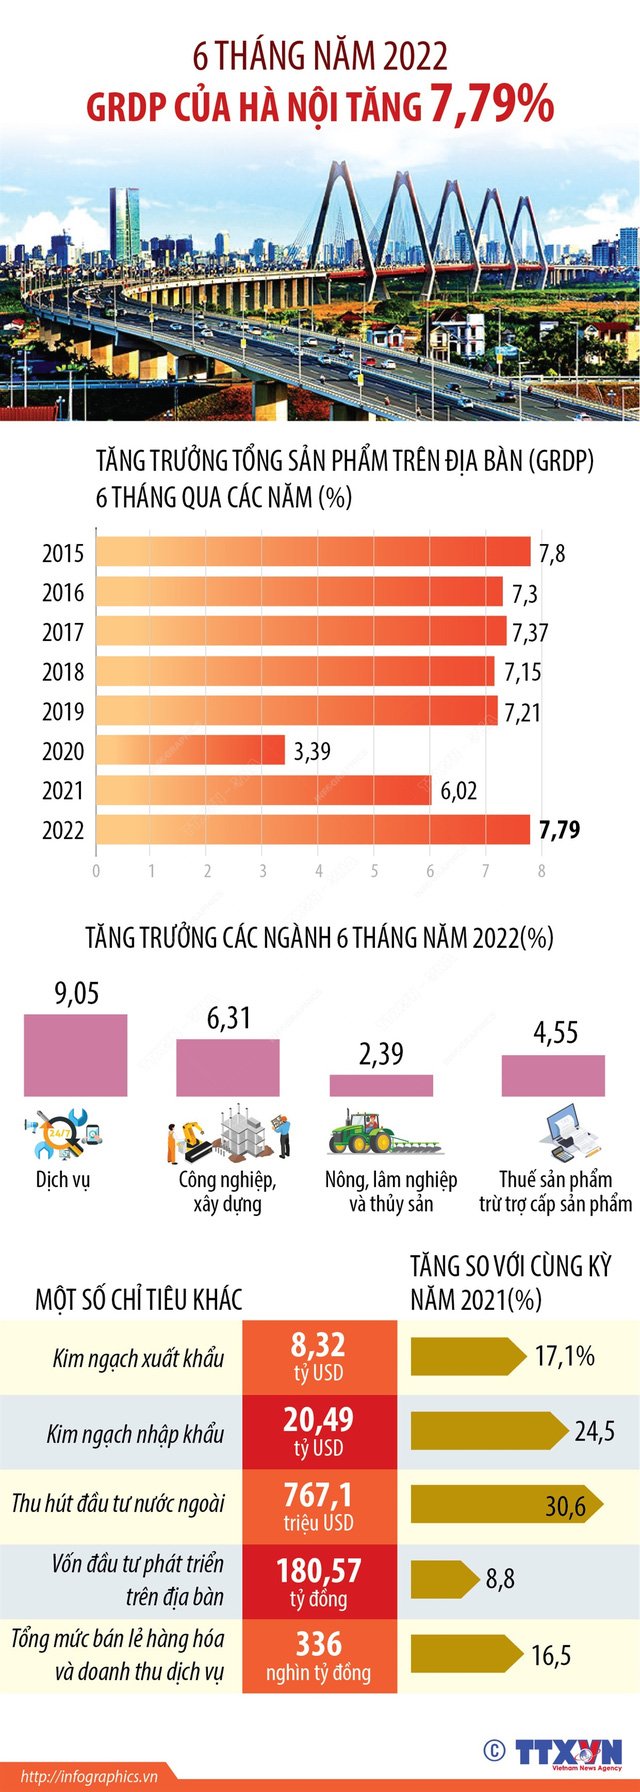 [INFOGRAPHIC] 6 tháng năm 2022: GRDP của Hà Nội tăng 7,79% - Ảnh 1.